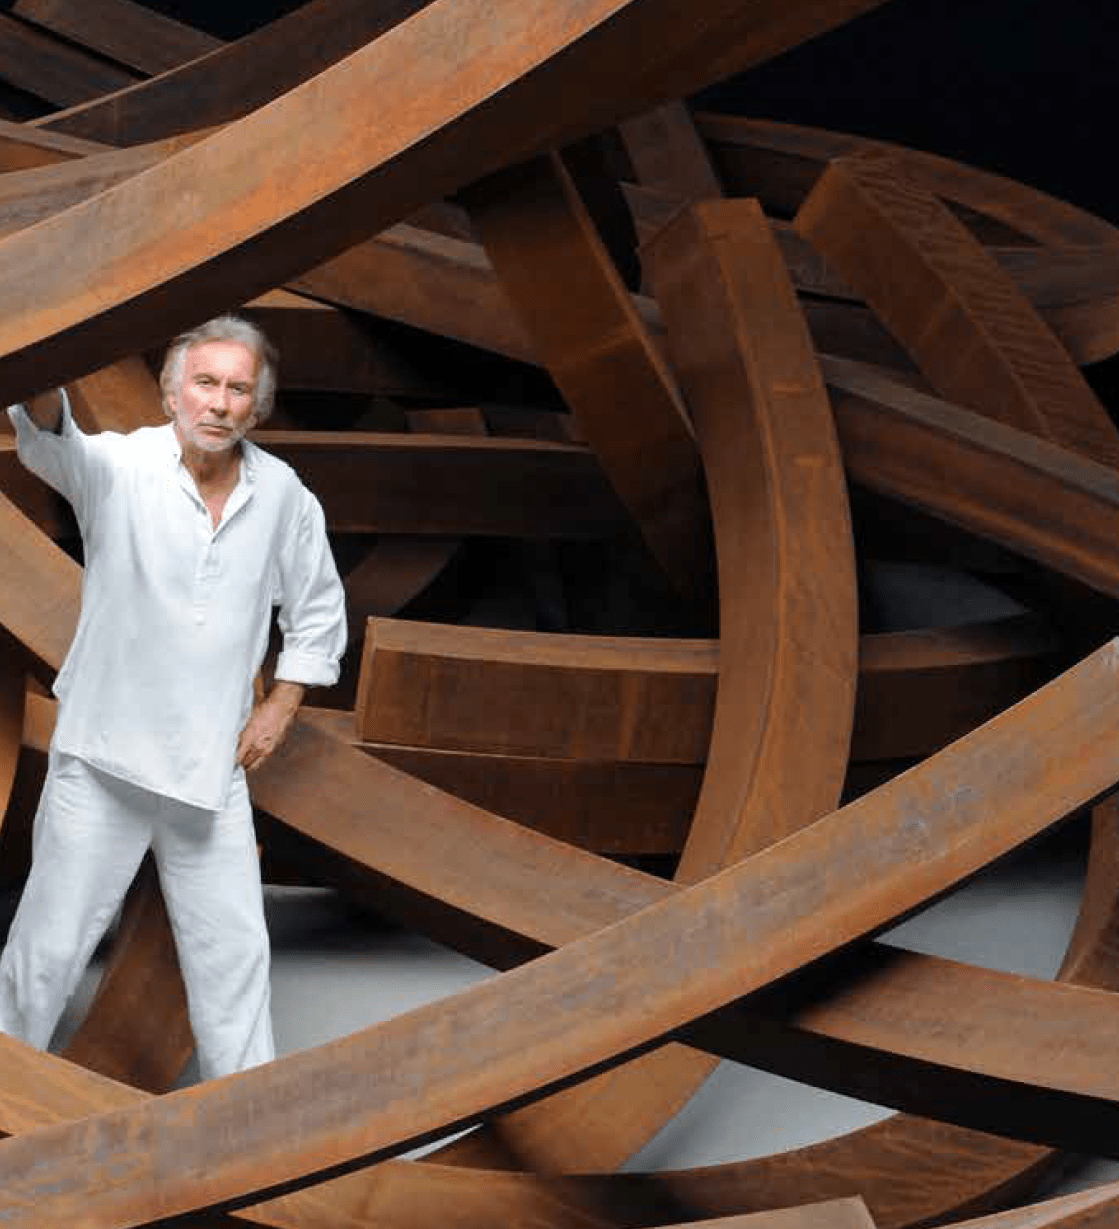 Bernar Venet and his Effondrement : 200 tonnes, Le Muy, 2017